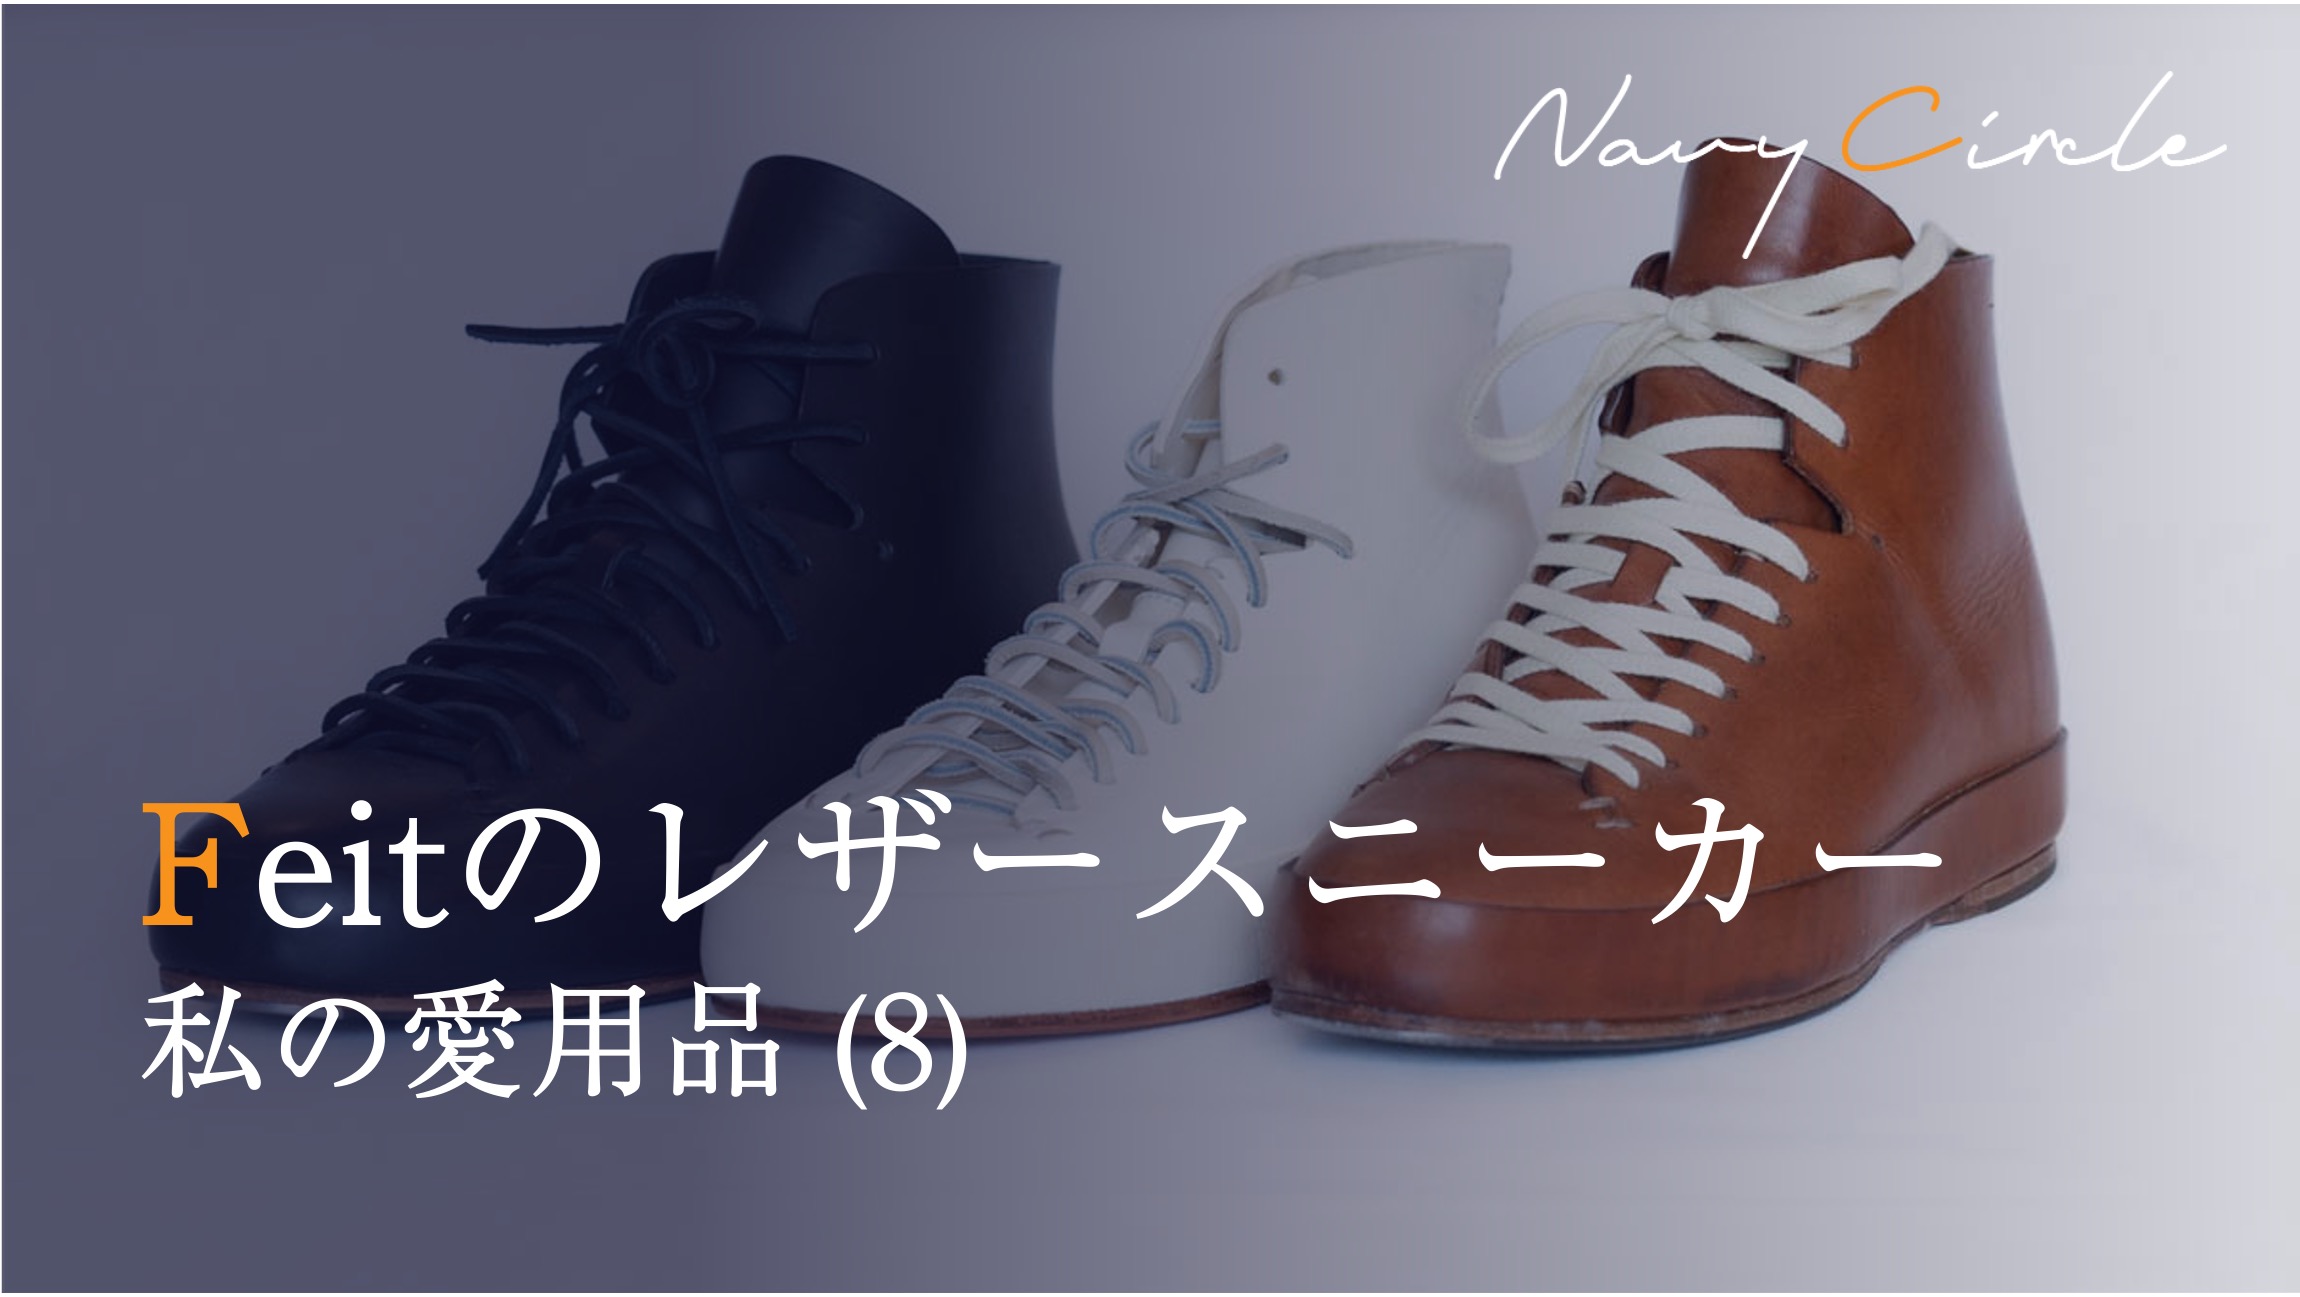 私の愛用品 (8) FEITのレザースニーカー | Leather sneakers by FEIT